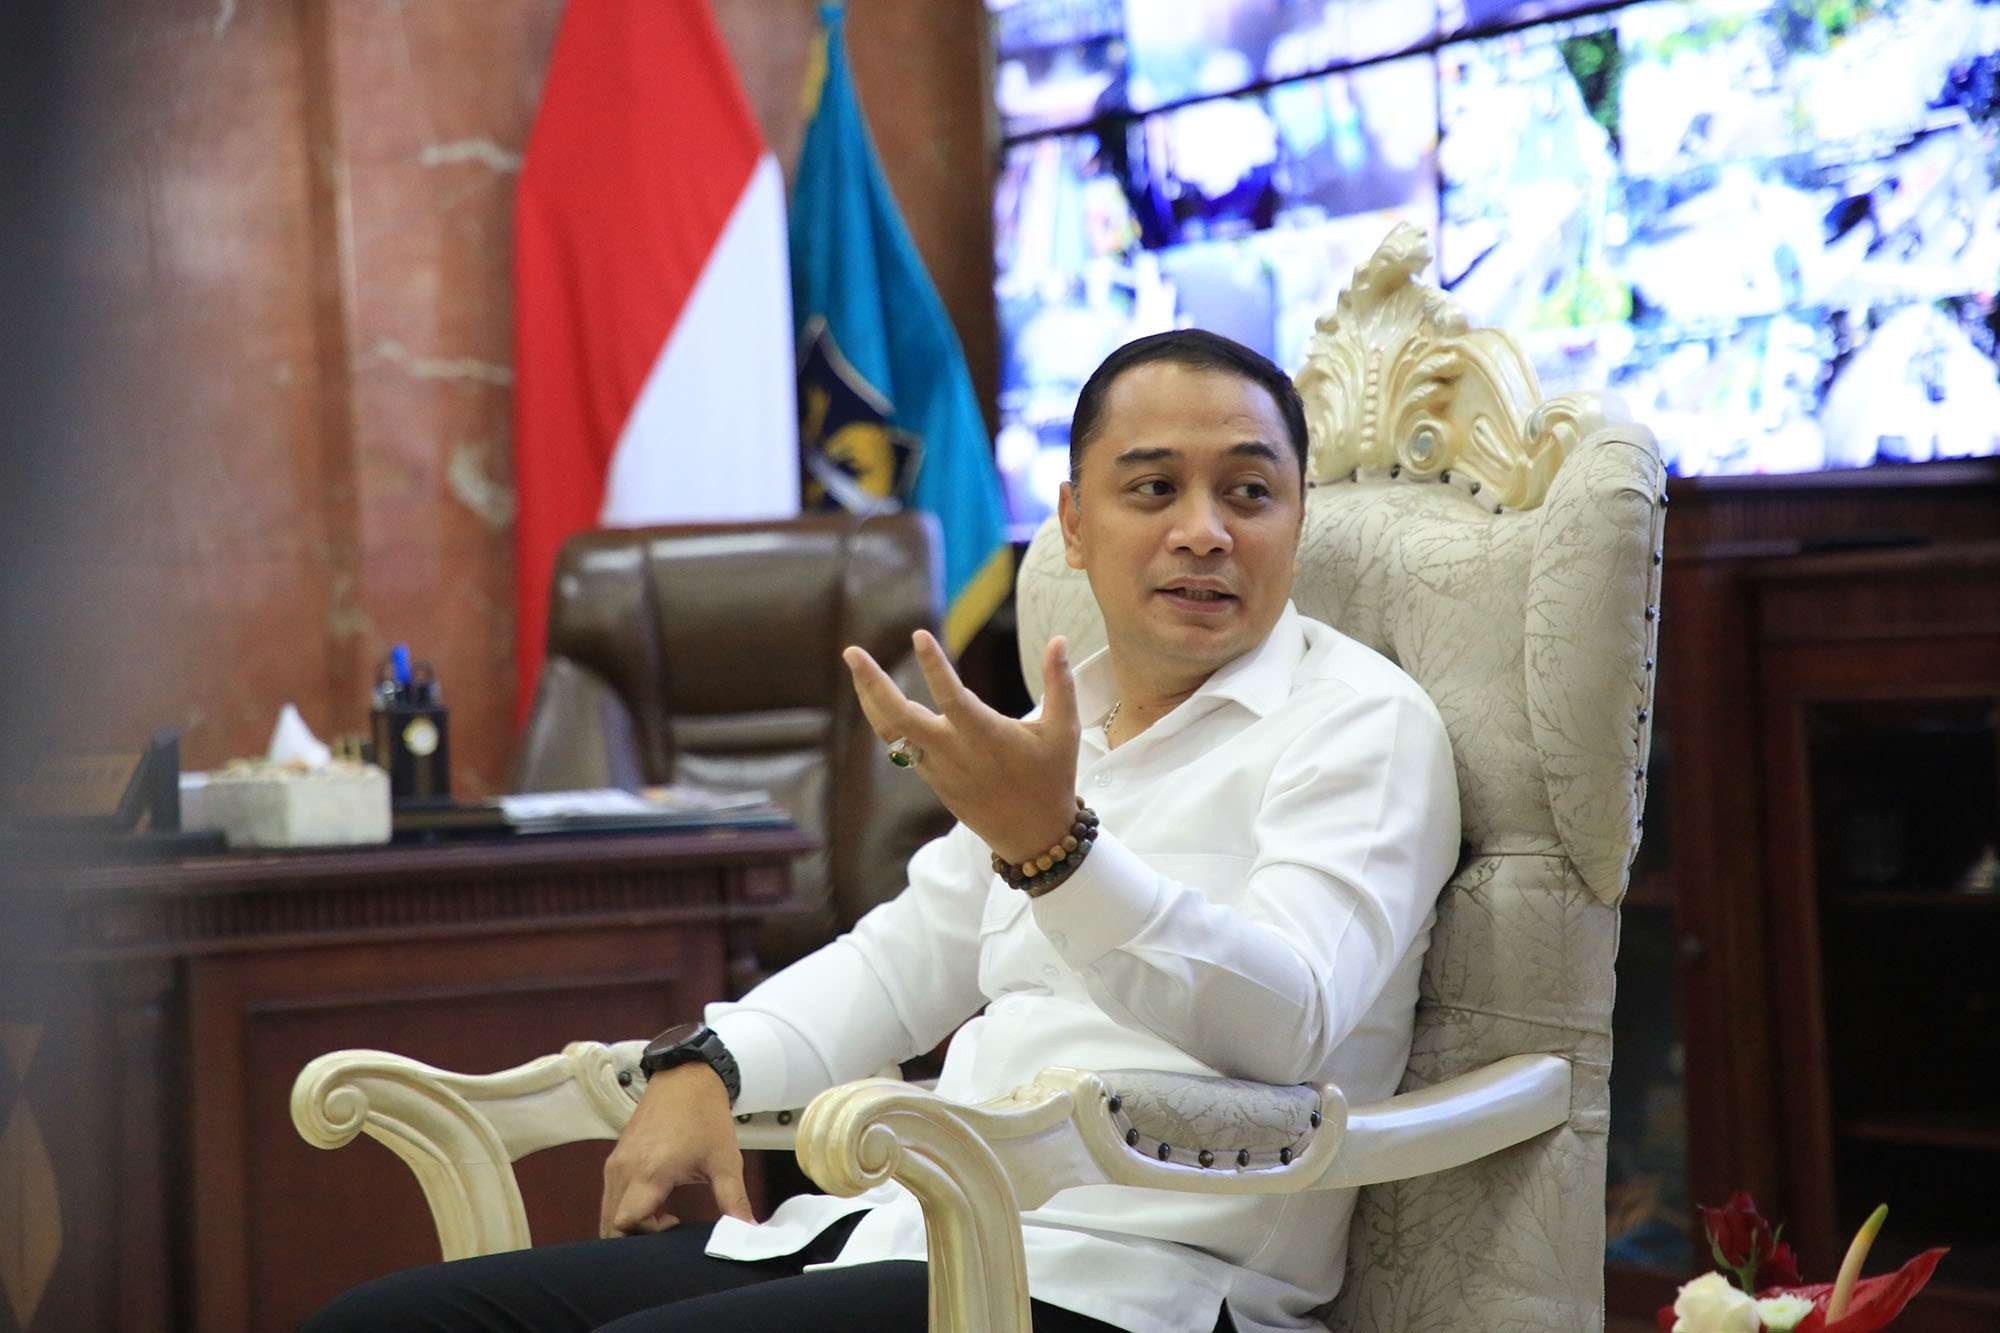 Walikota Surabaya, Eri Cahyadi mengeluarkan Surat Edaran (SE) terkait Rekreasi dan Hiburan Umum (RHU) saat malam Tahun Baru 2023. (Foto: Humas Pemkot Surabaya)